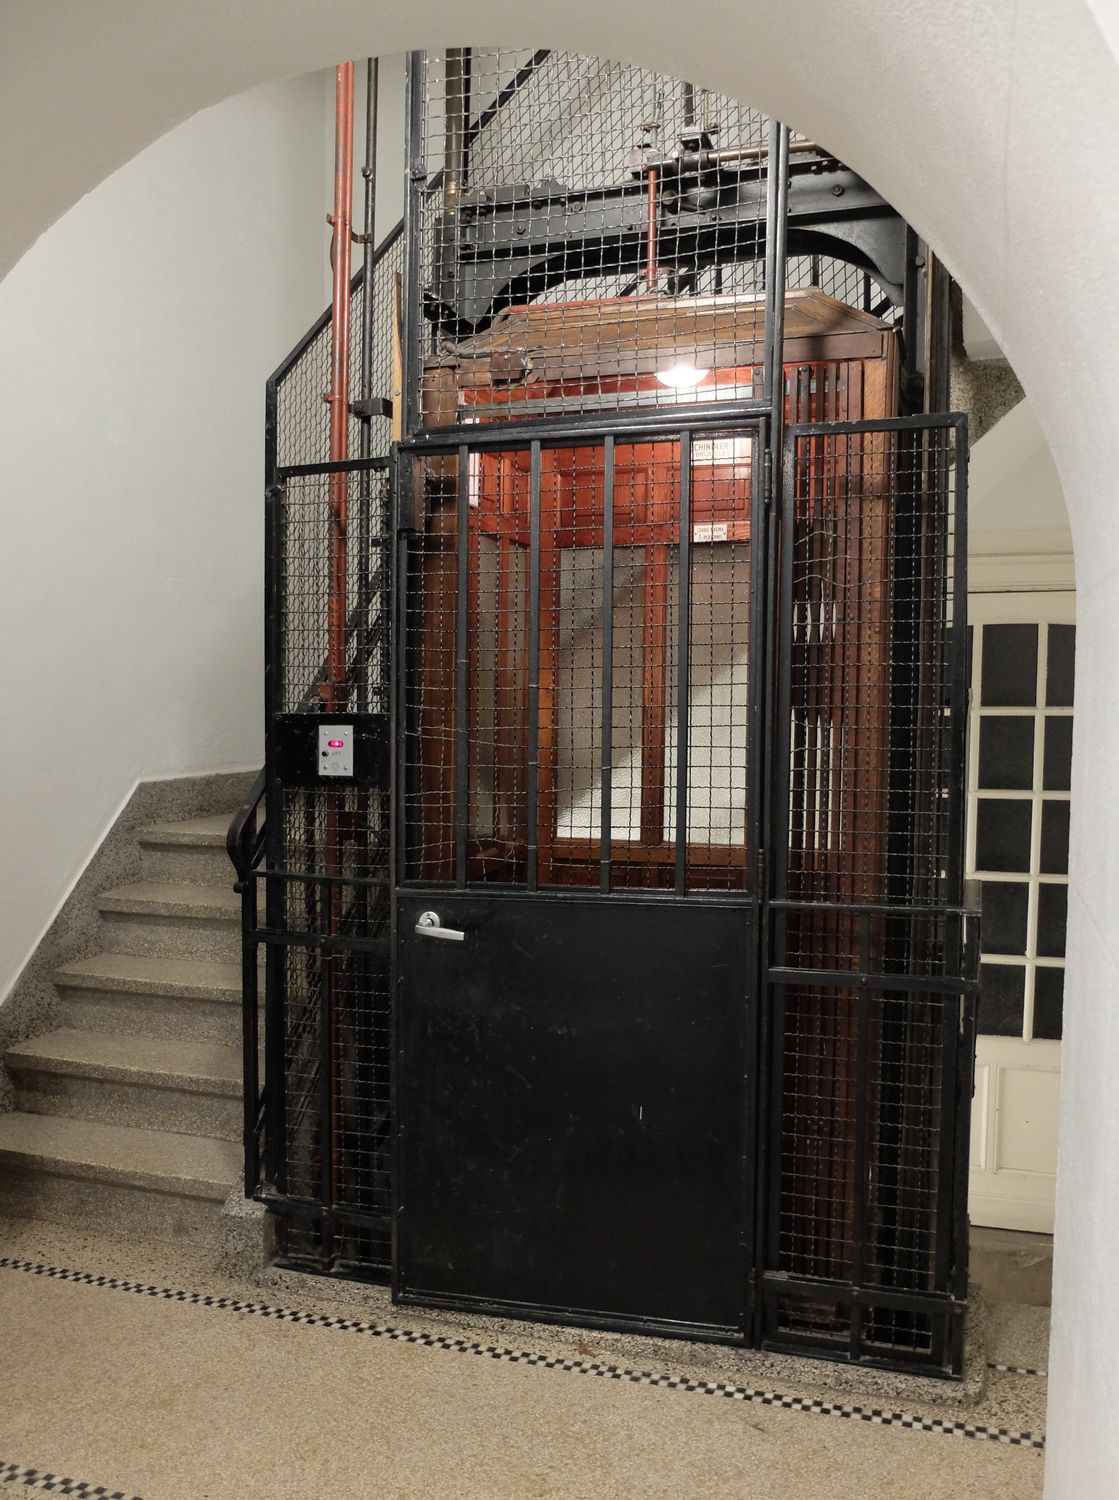 Rue des Taxandres 6. Ascenseur au rez-de-chaussée © Homegrade, 2021